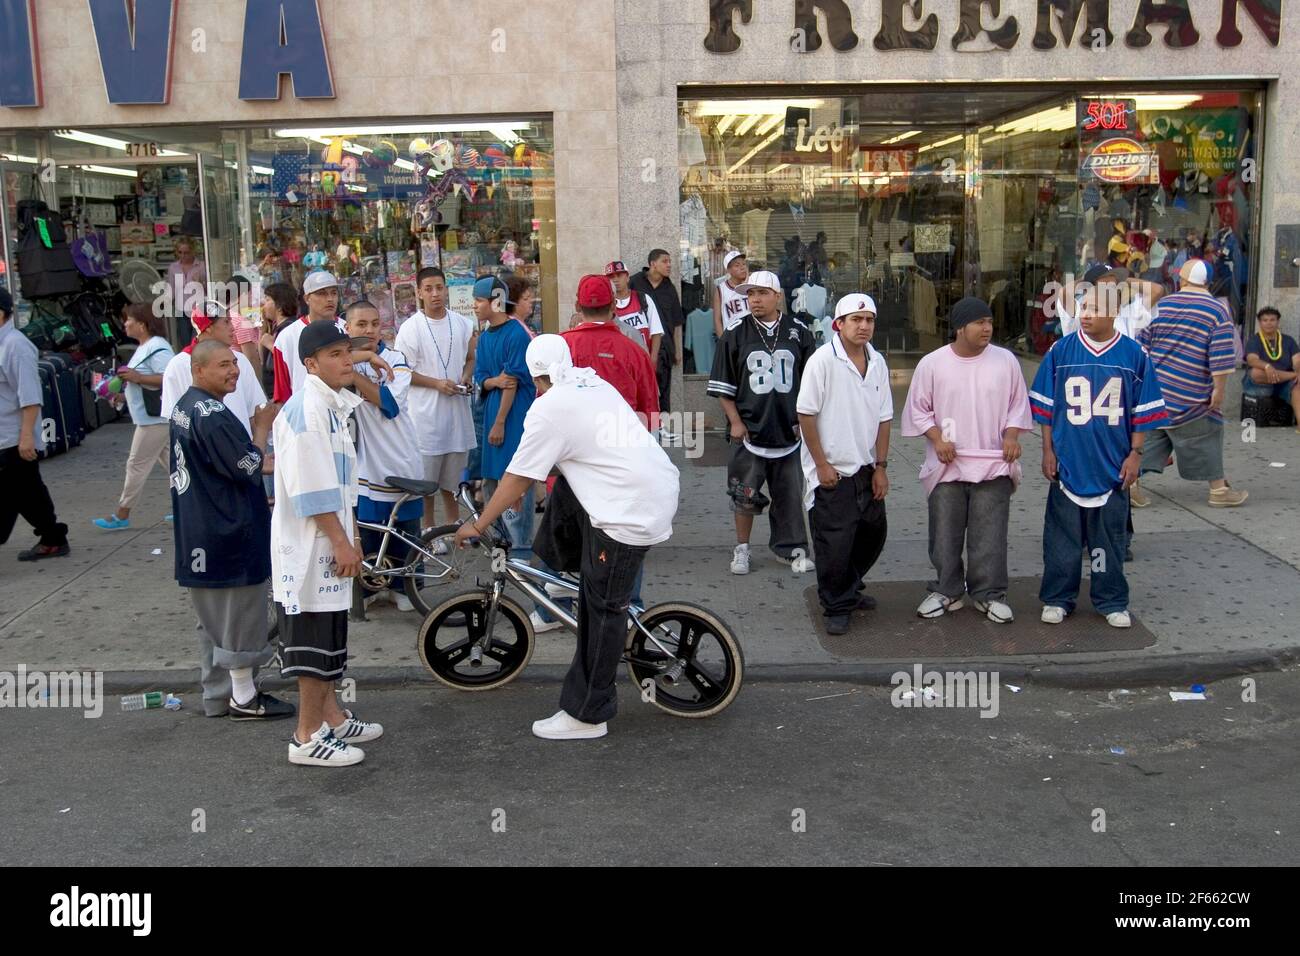 2004 settembre, 5th Avenue, Sunset Park, Brooklyn, New York. Un gran numero di ragazzi in strada con un abito uniforme in stile gang. Foto Stock